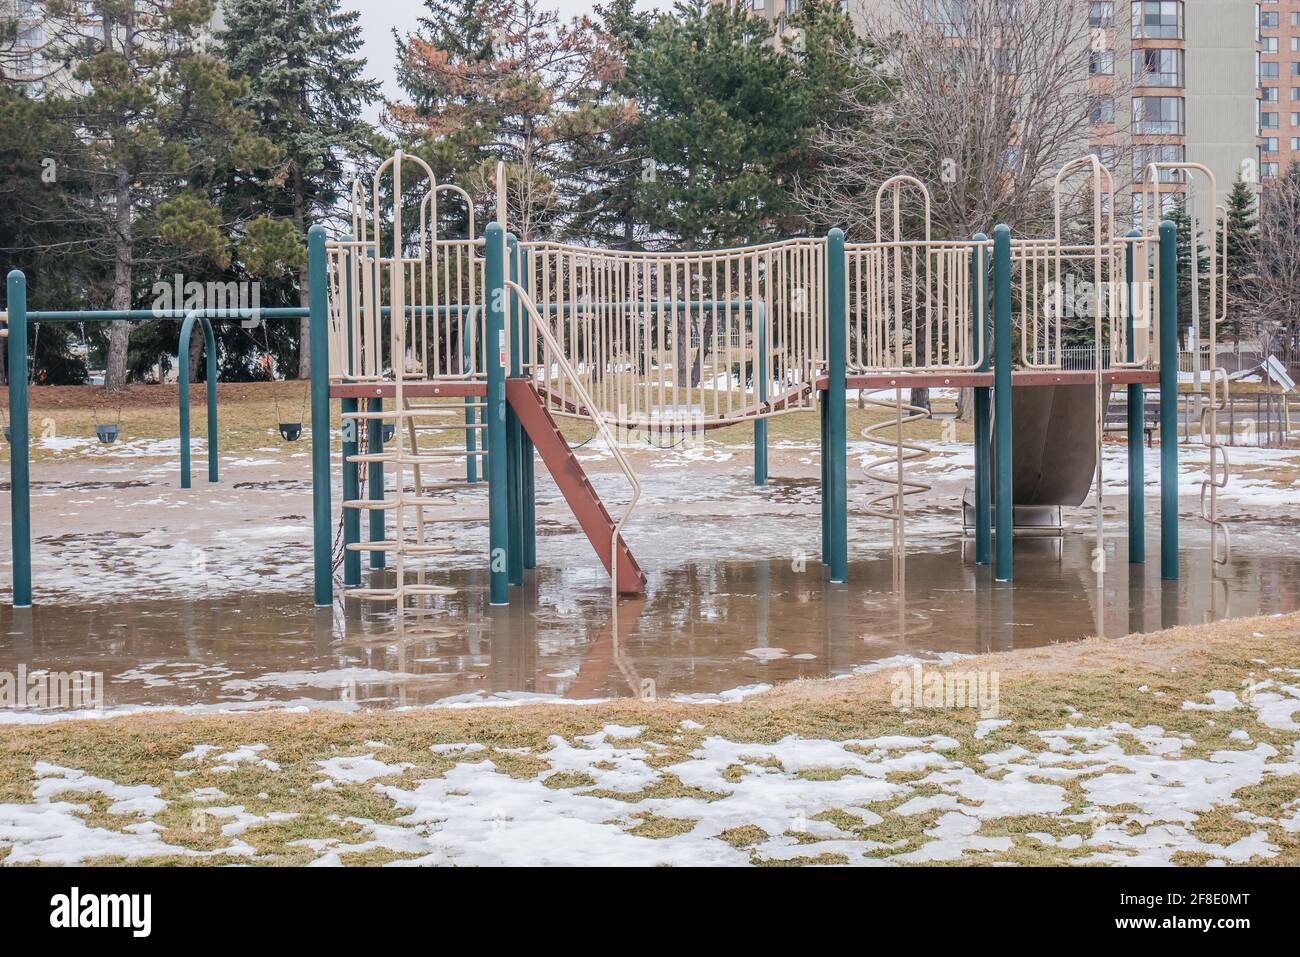 terrain de jeu inondé en raison de la neige fondue après l'hiver Banque D'Images